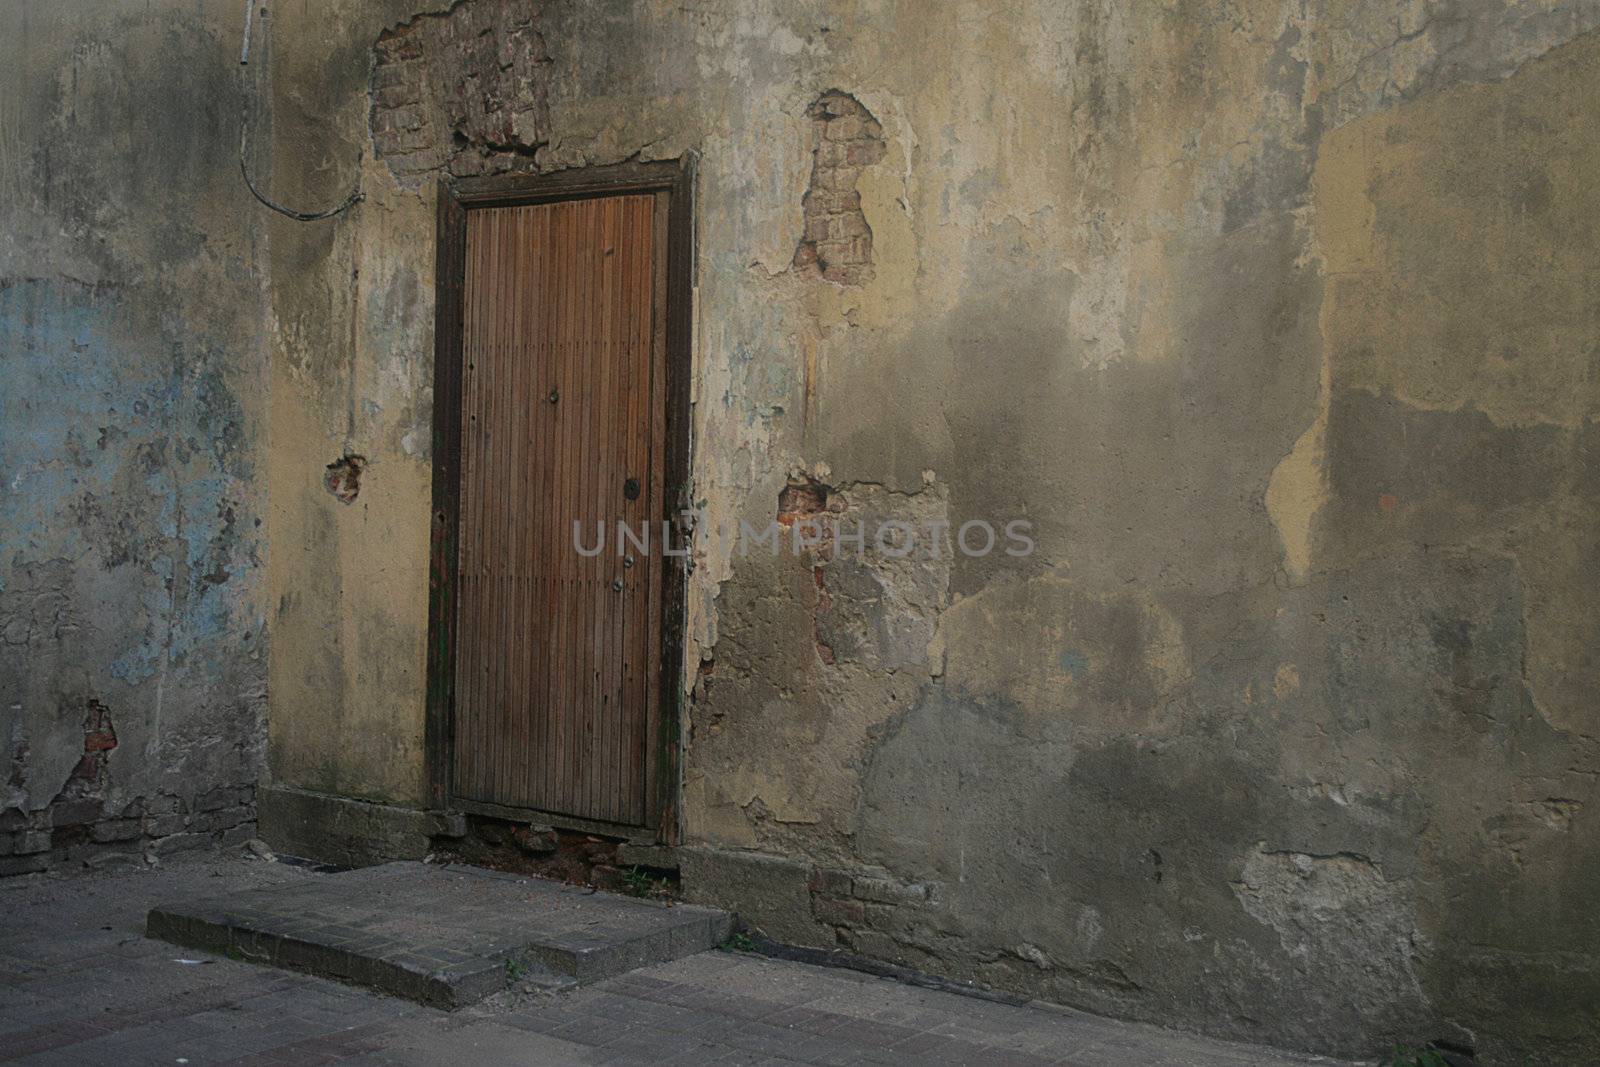 wooden door in the stone wall